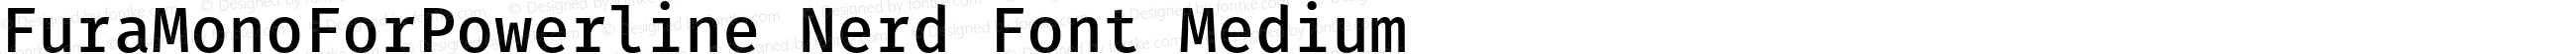 Fura Mono Medium for Powerline Nerd Font Plus Font Awesome Plus Octicons Plus Pomicons Plus Font Linux